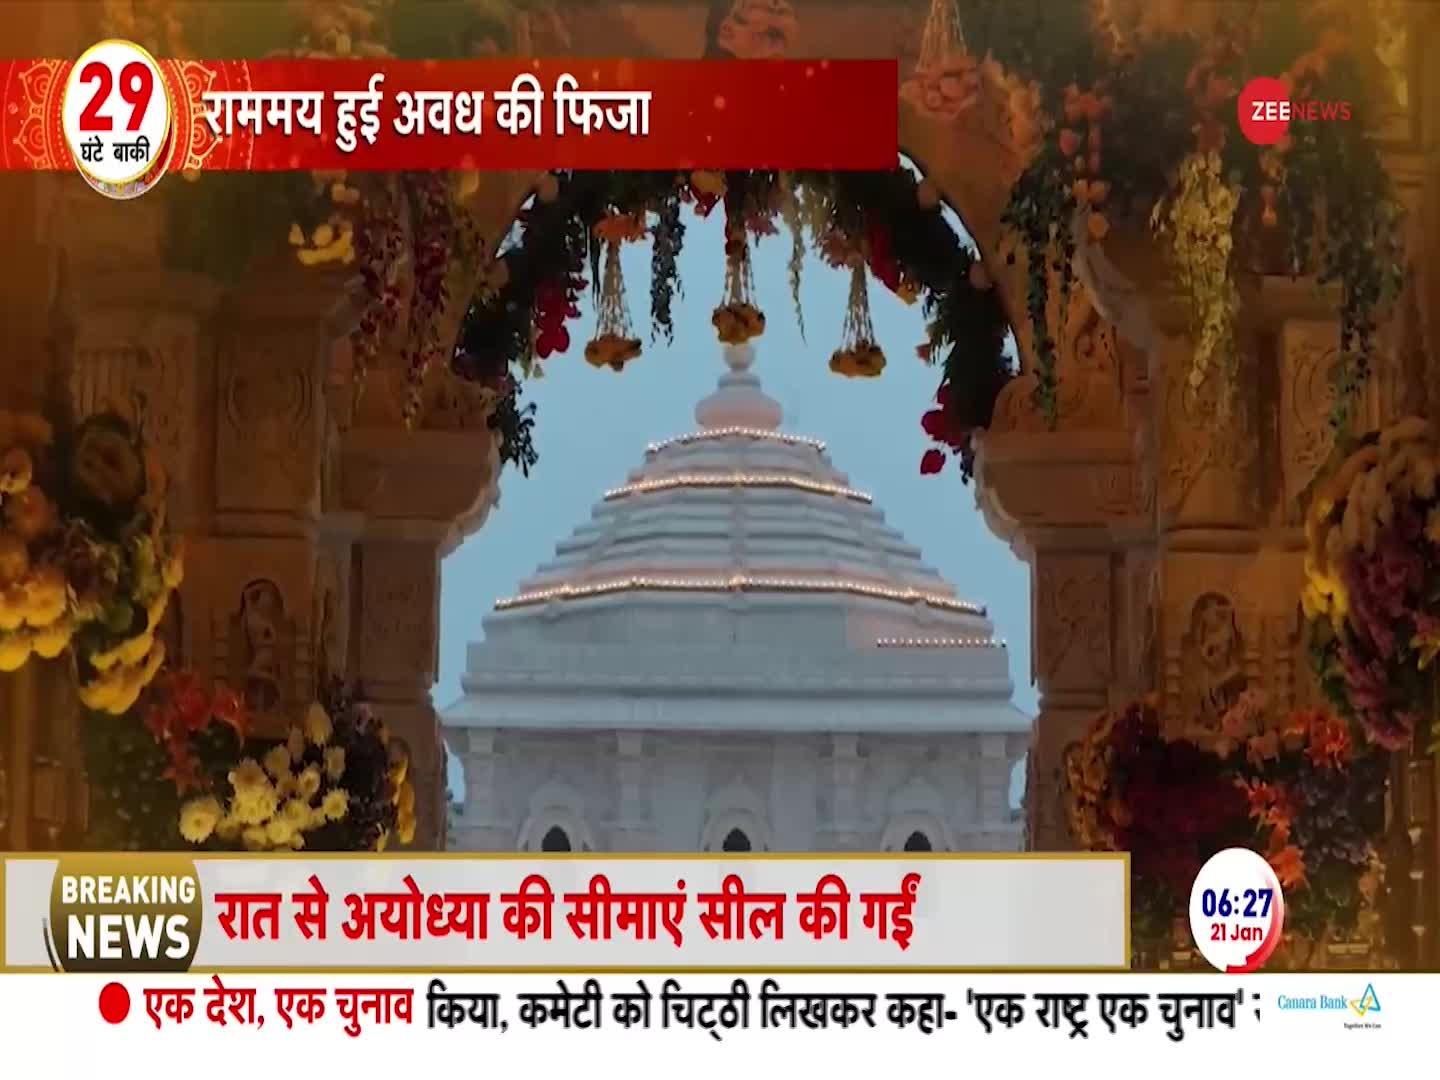 Ram Mandir: मंदिर को अंदर से देख, हर भक्त का हृदय भक्ति भाव से भर जाएगा